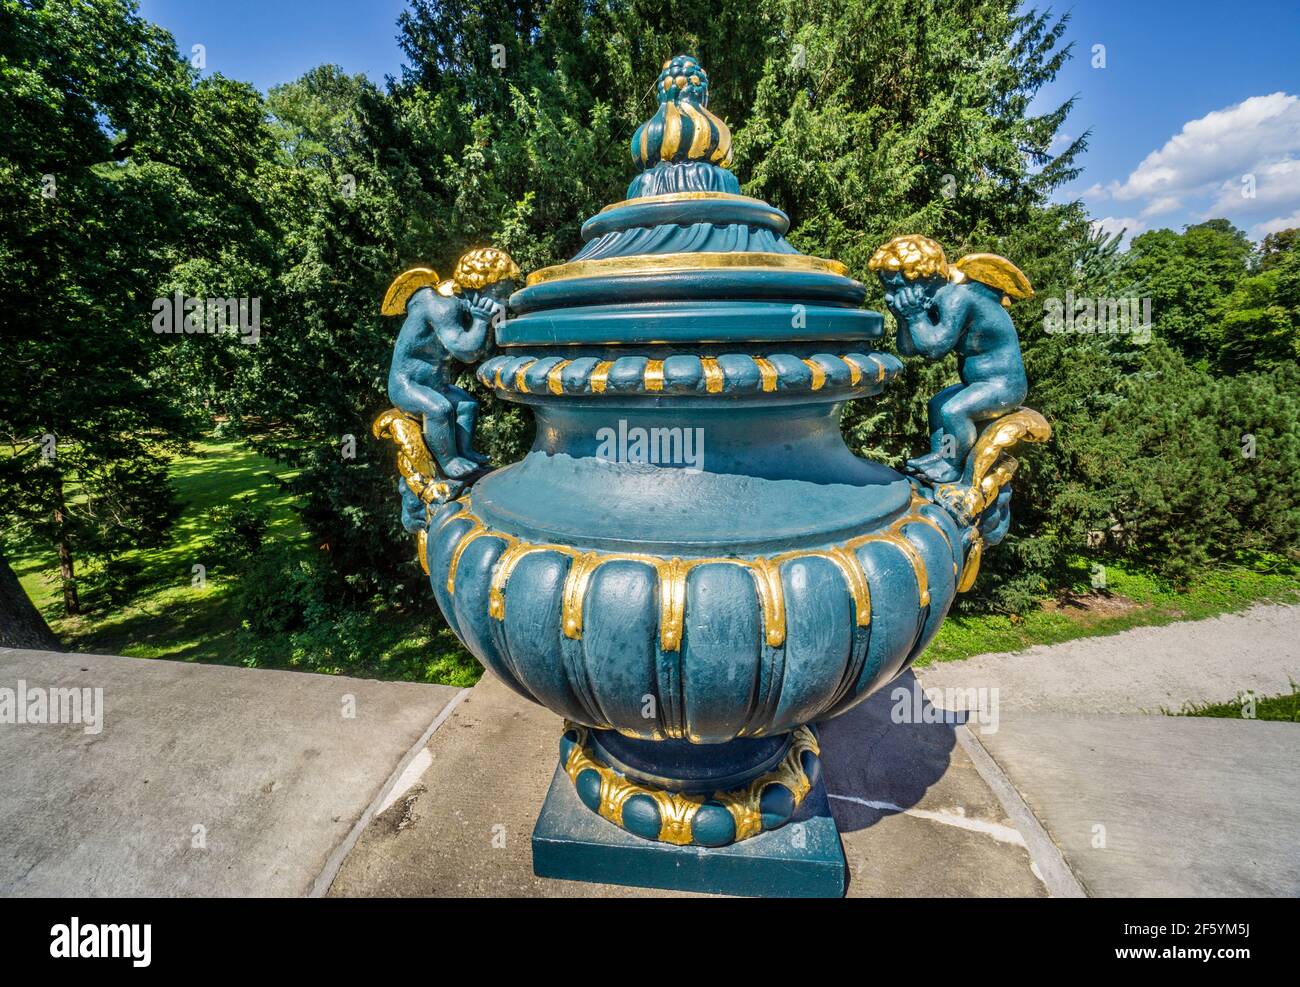 Urne decorative sulle balaustre del castello di Pless, Pszczyna (Pless), Slesia, Polonia meridionale Foto Stock